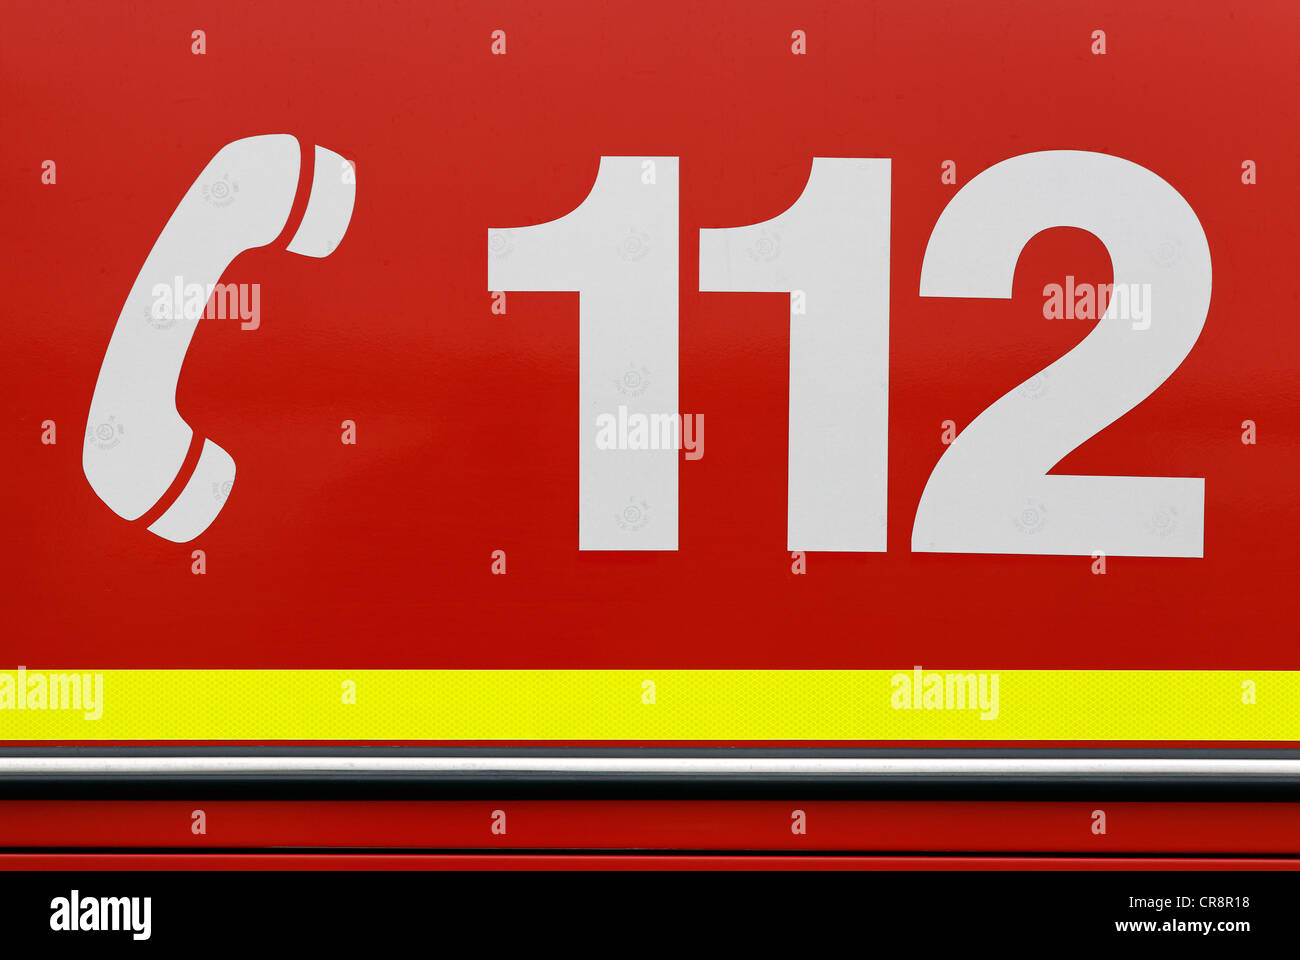 Number 112 icon Banque de photographies et d'images à haute résolution -  Alamy